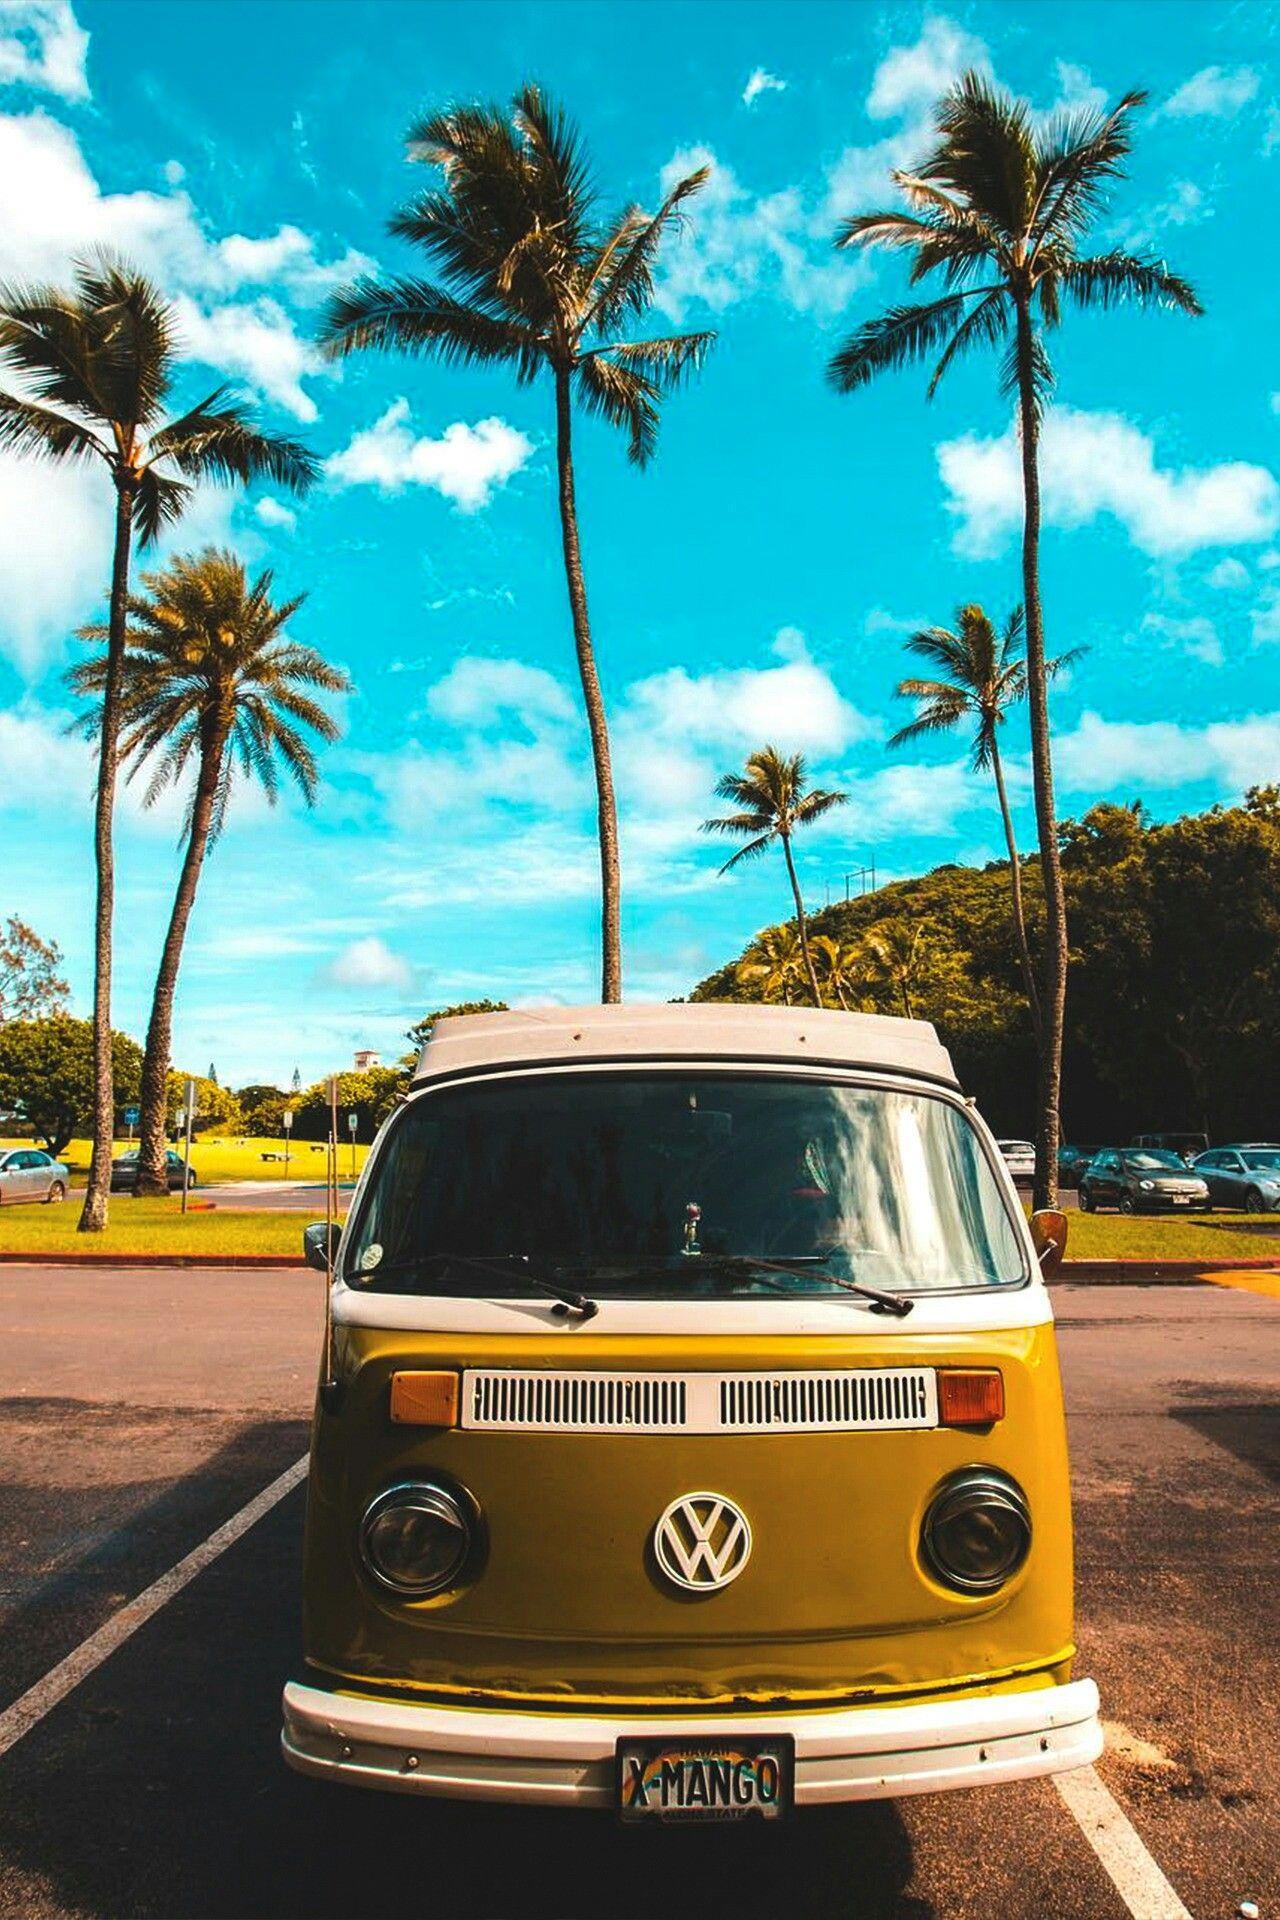 Charm of hippie VW camper van is irresistible